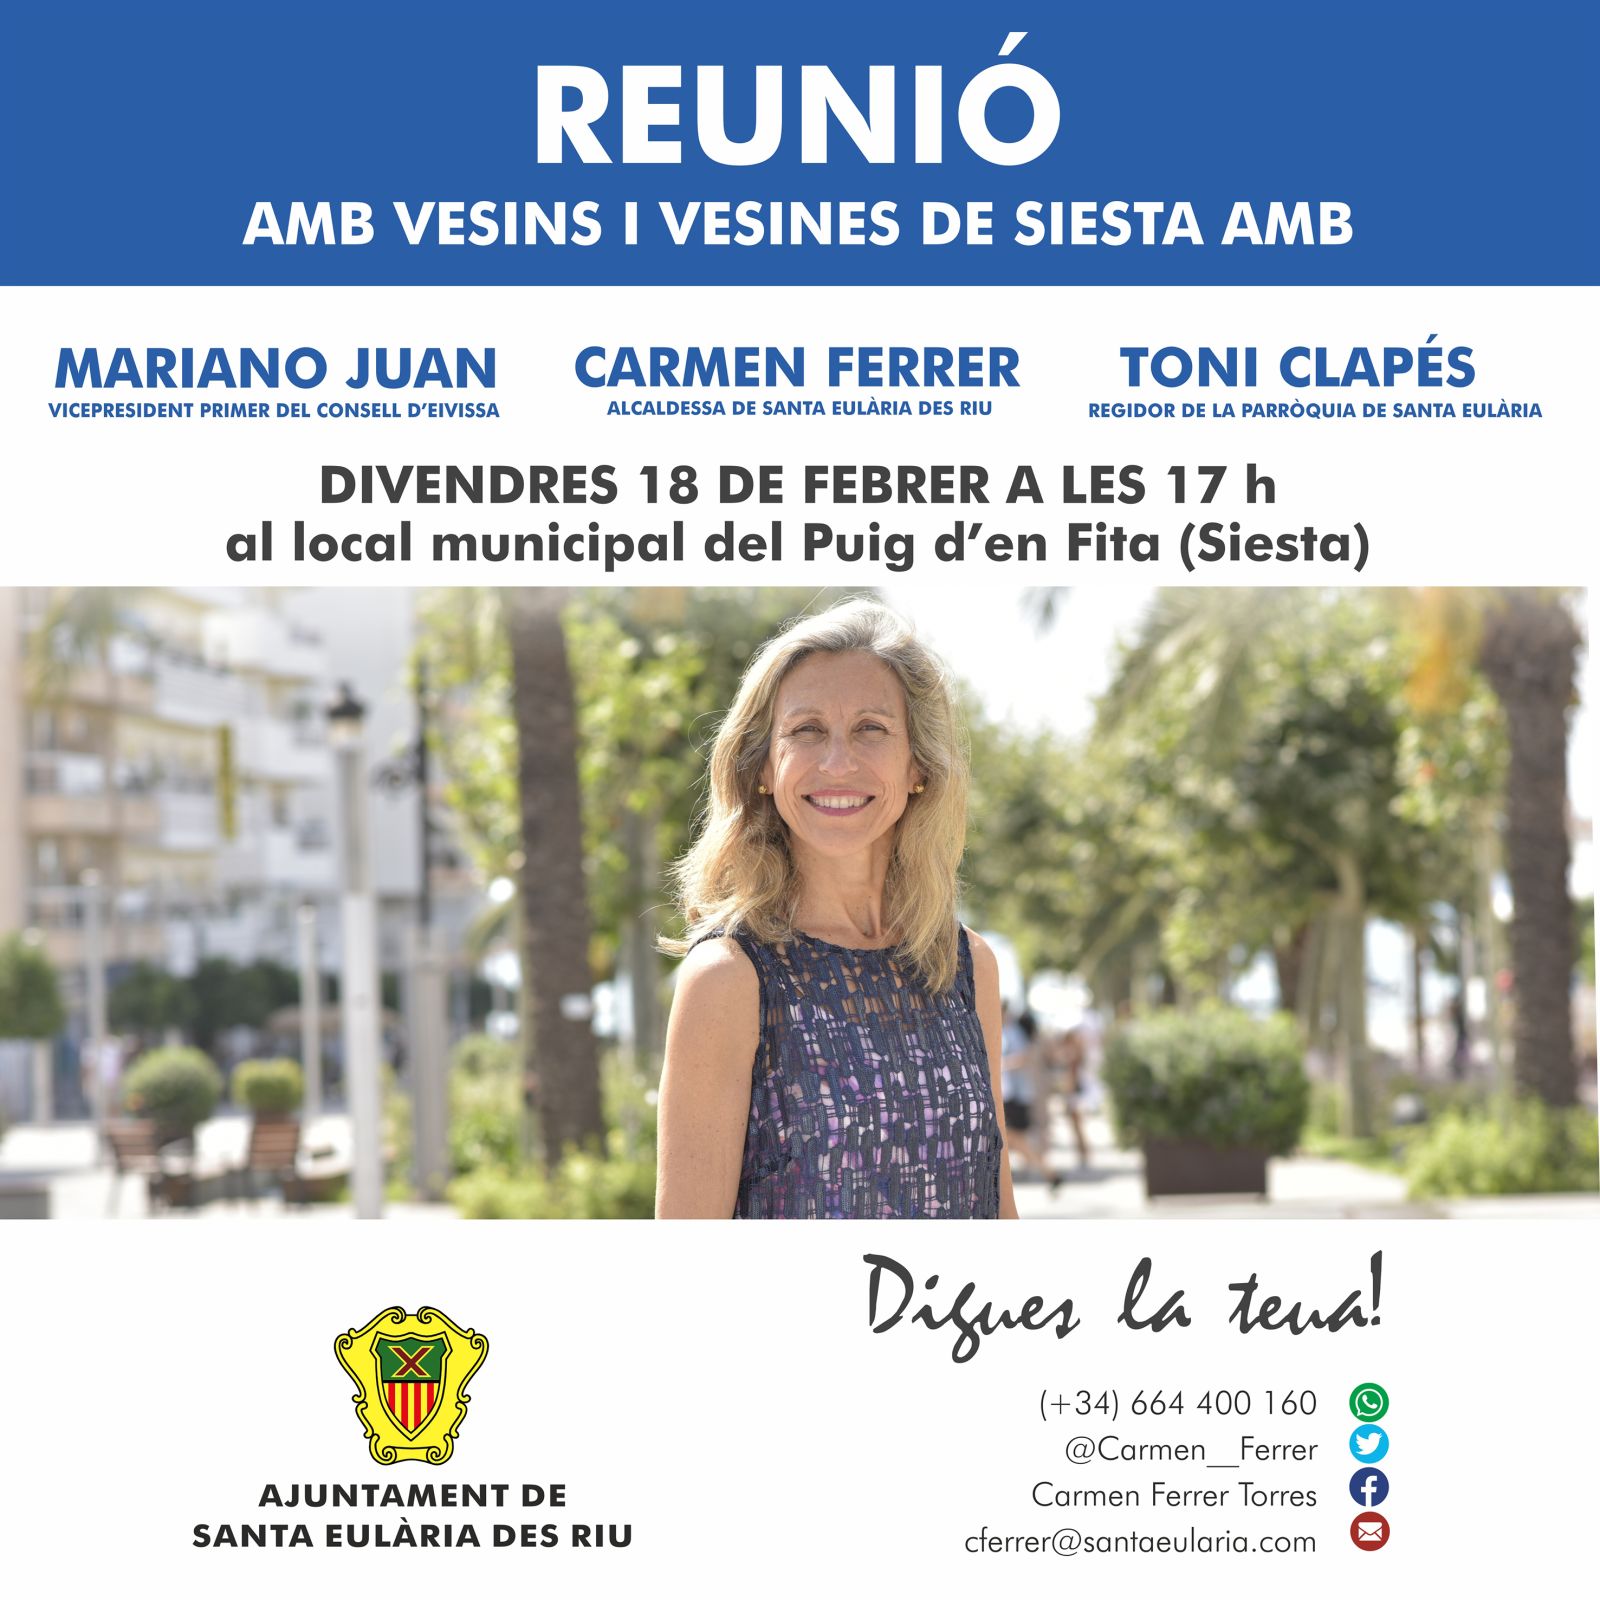 Reunión abierta a toda la ciudadanía en el Puig d'en Fita-Siesta con la alcaldesa, Carmen Ferrer, y el vicepresidente del Consell d'Eivissa, Mariano Juan